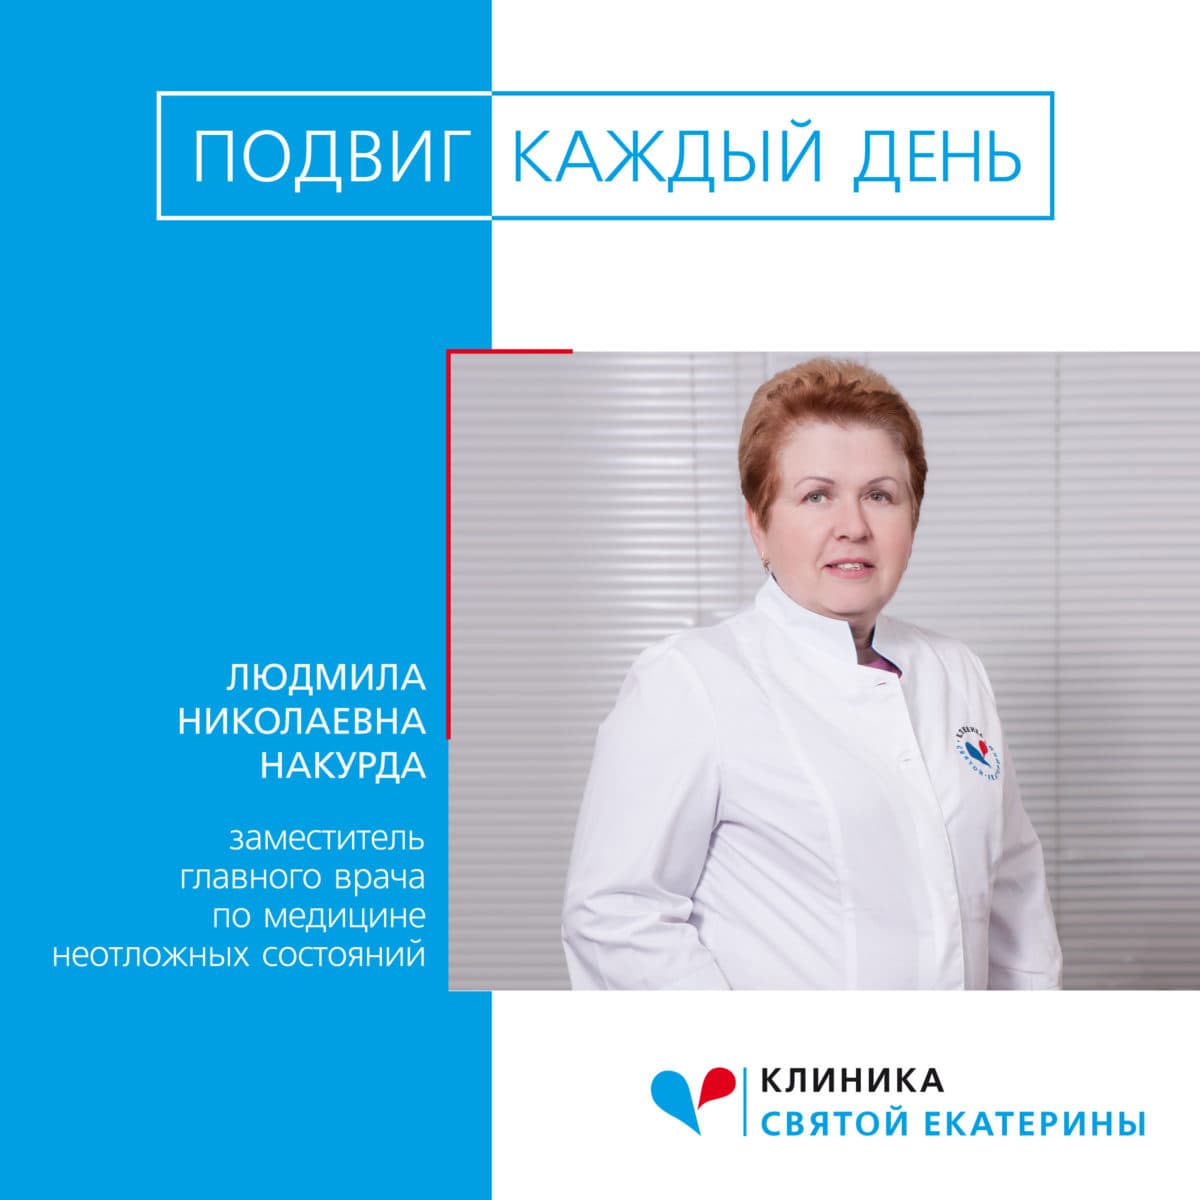 Подвиг каждый день — служба скорой медицинской помощи Клиники Святой Екатерины - 77 - svekaterina.ua